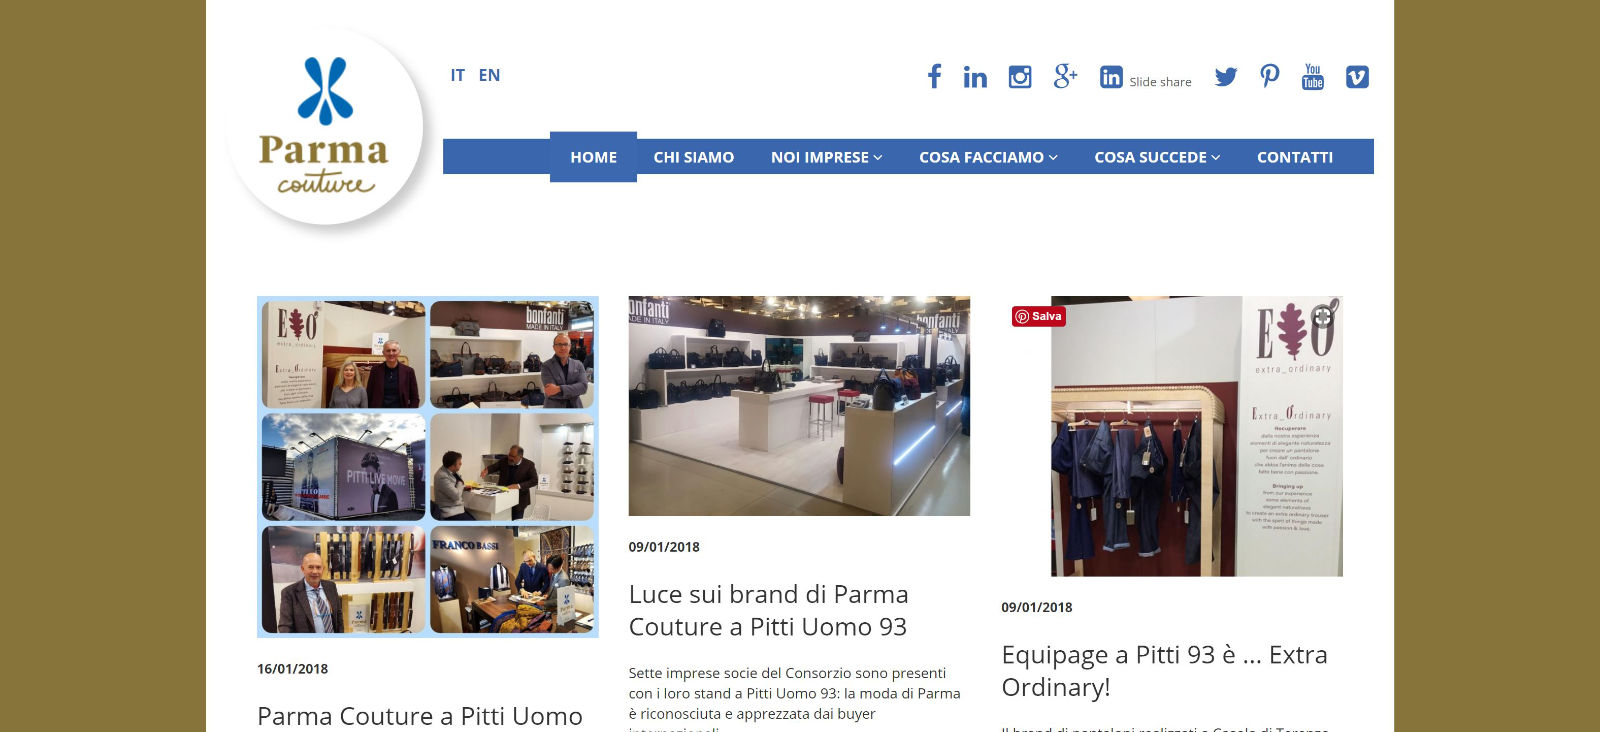 Parma Couture esprime la propria vocazione Social